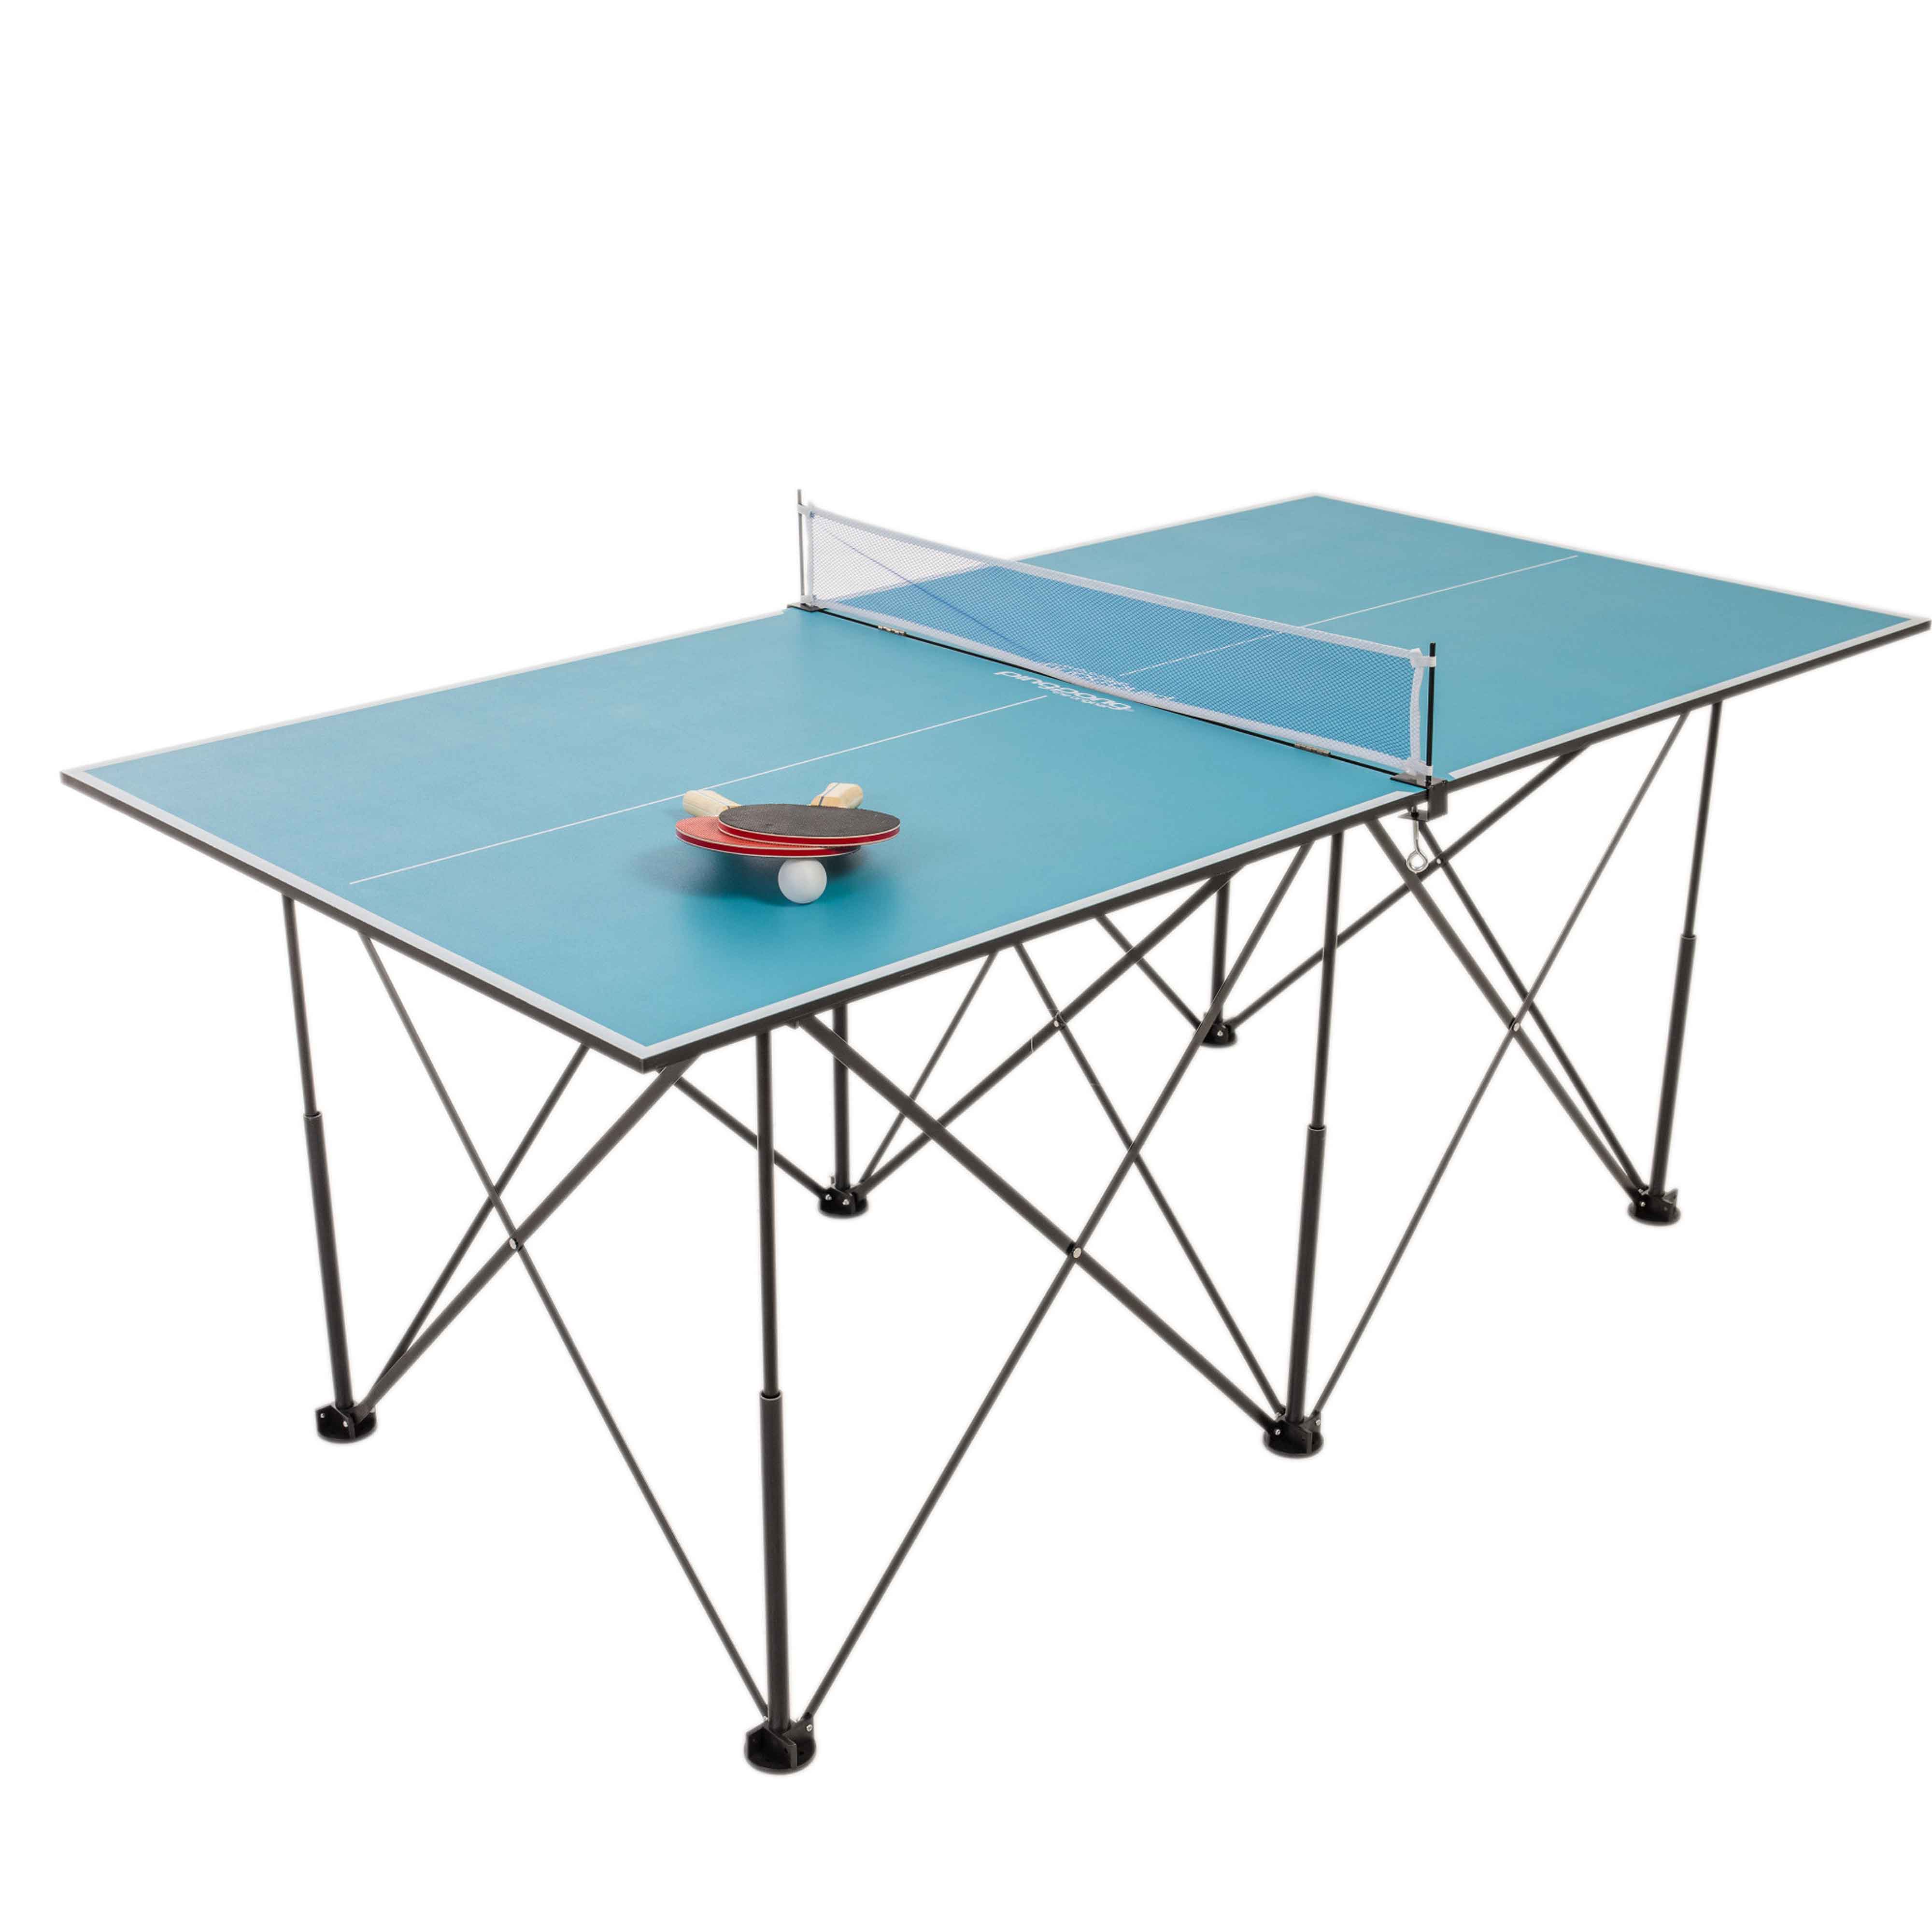 6' Pop Up Table Tennis Escalade